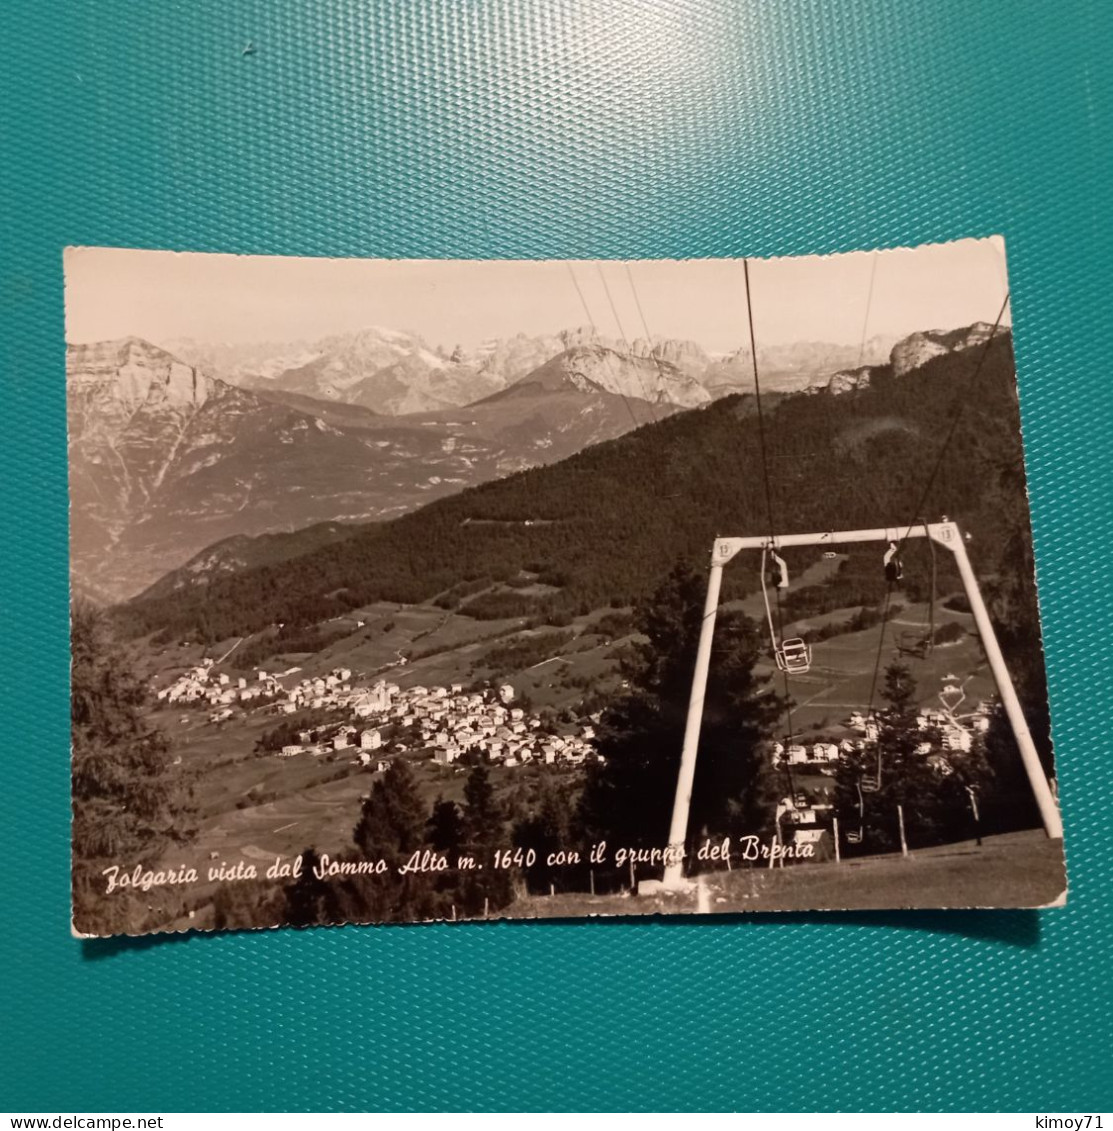 Cartolina Folgaria Vista Dal Sommo Alto M. 1640 Con Il Gruppo Del Brenta. Viaggiata - Trento